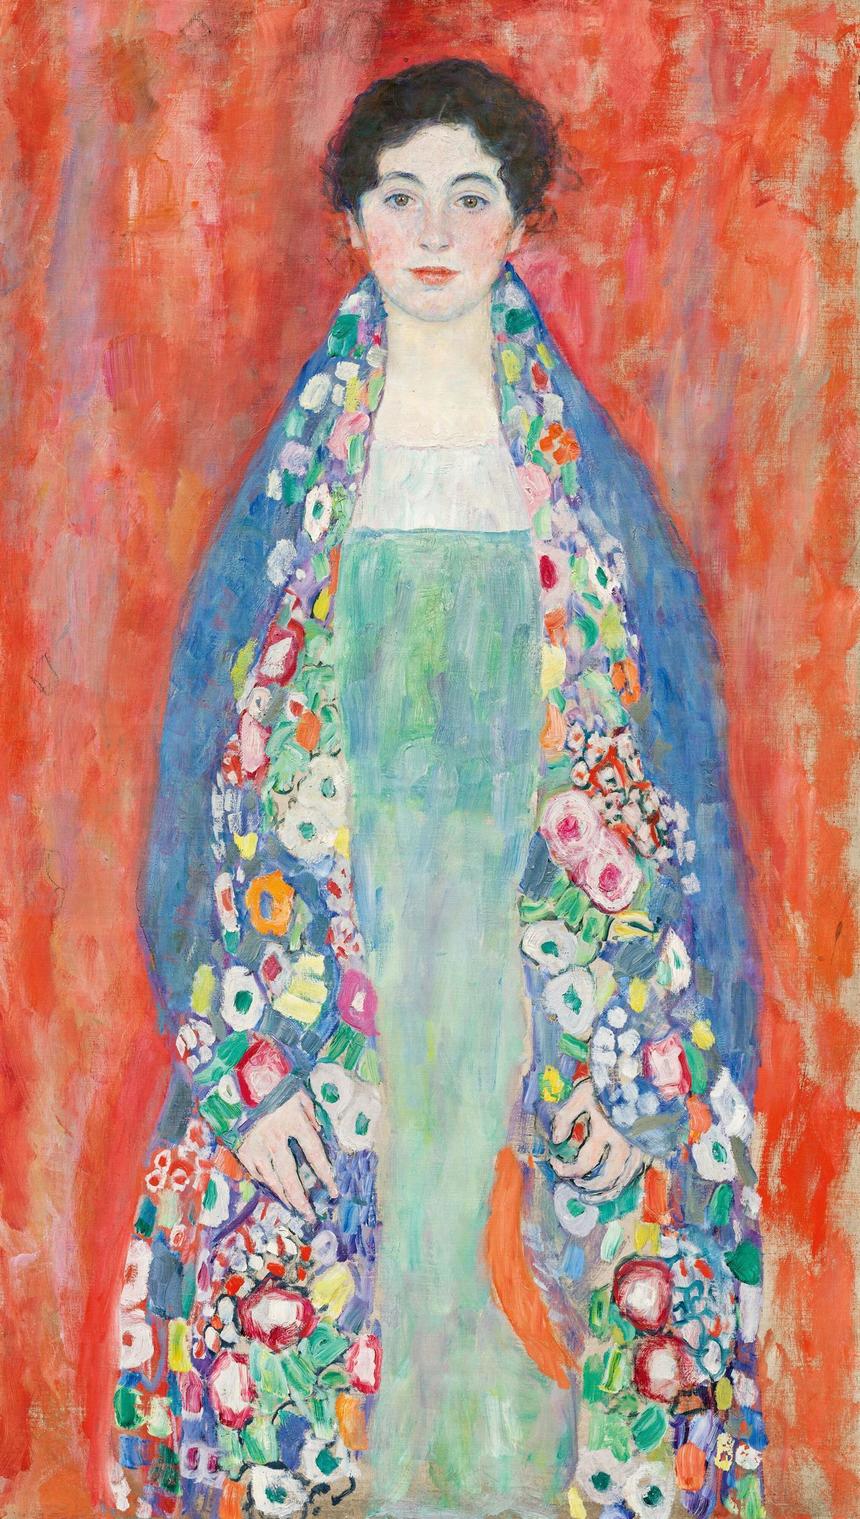 "Portretul domnişoarei Lieser", tabloul de Gustav Klimt mult timp dispărut, a fost vândut la Viena pentru 30 de milioane de euro, un record pentru Austria